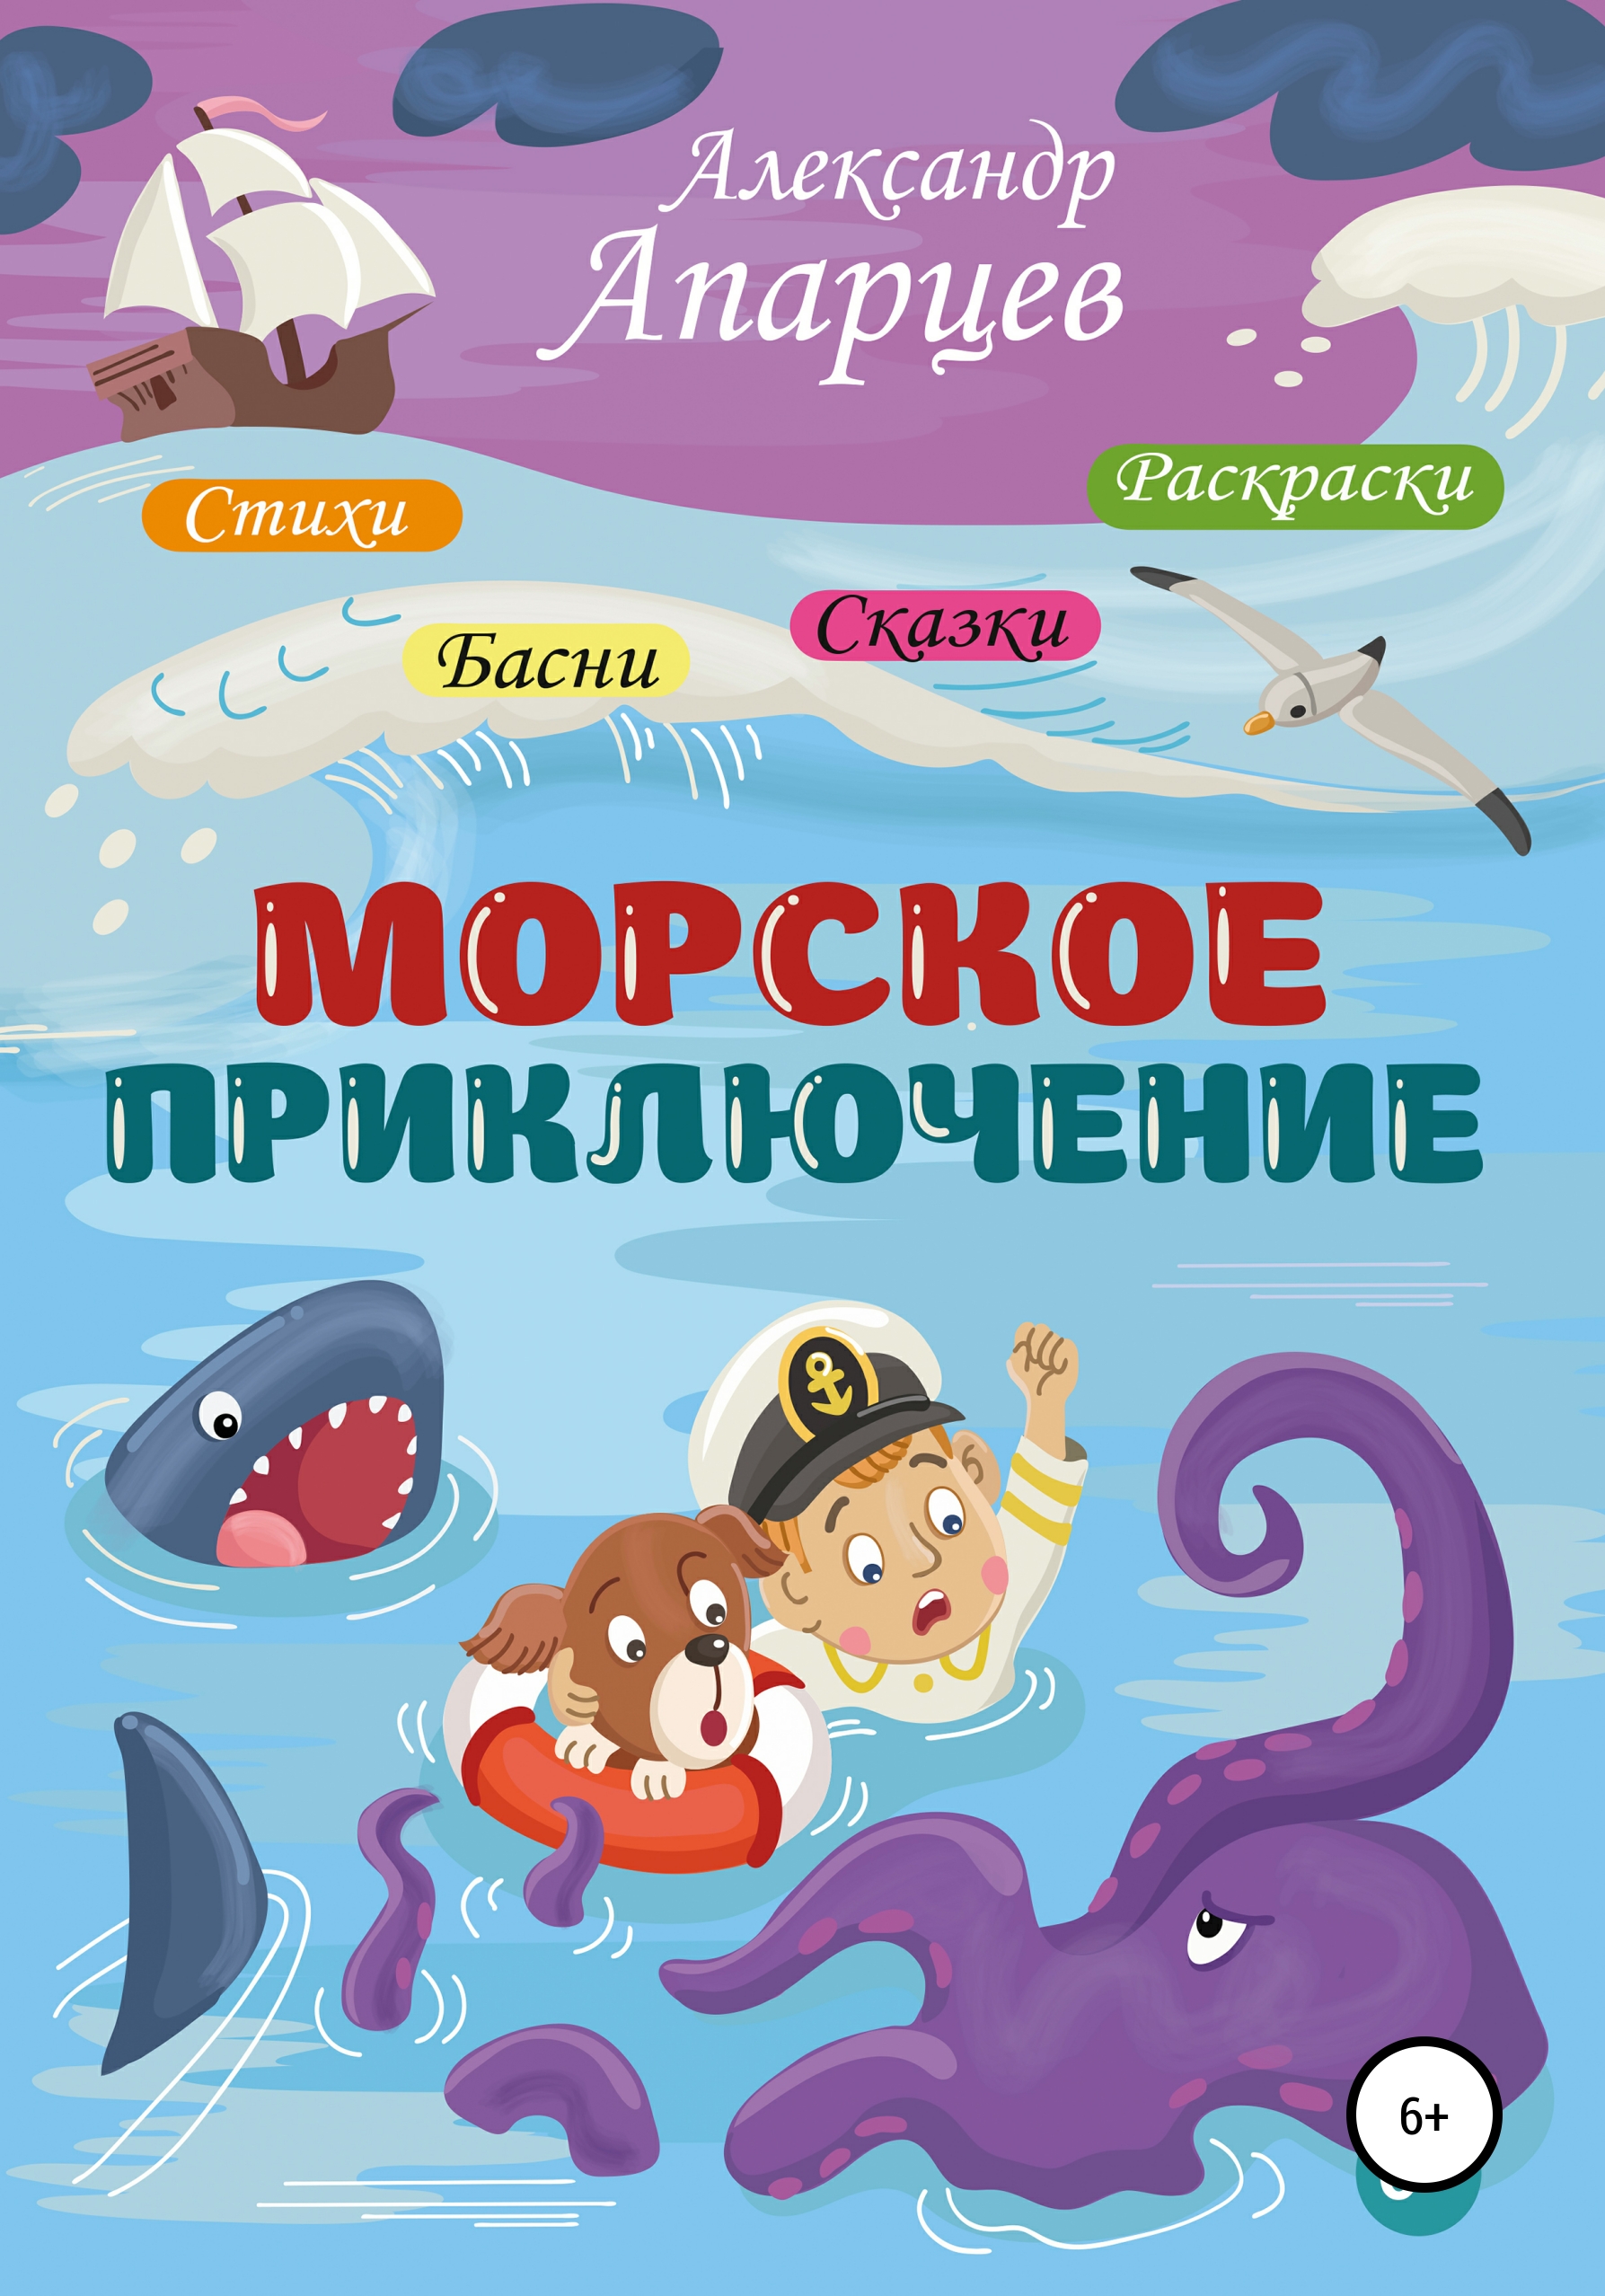 Морское приключение 2. Книги про морские приключения для детей. Морское приключение. Морская литература для детей.